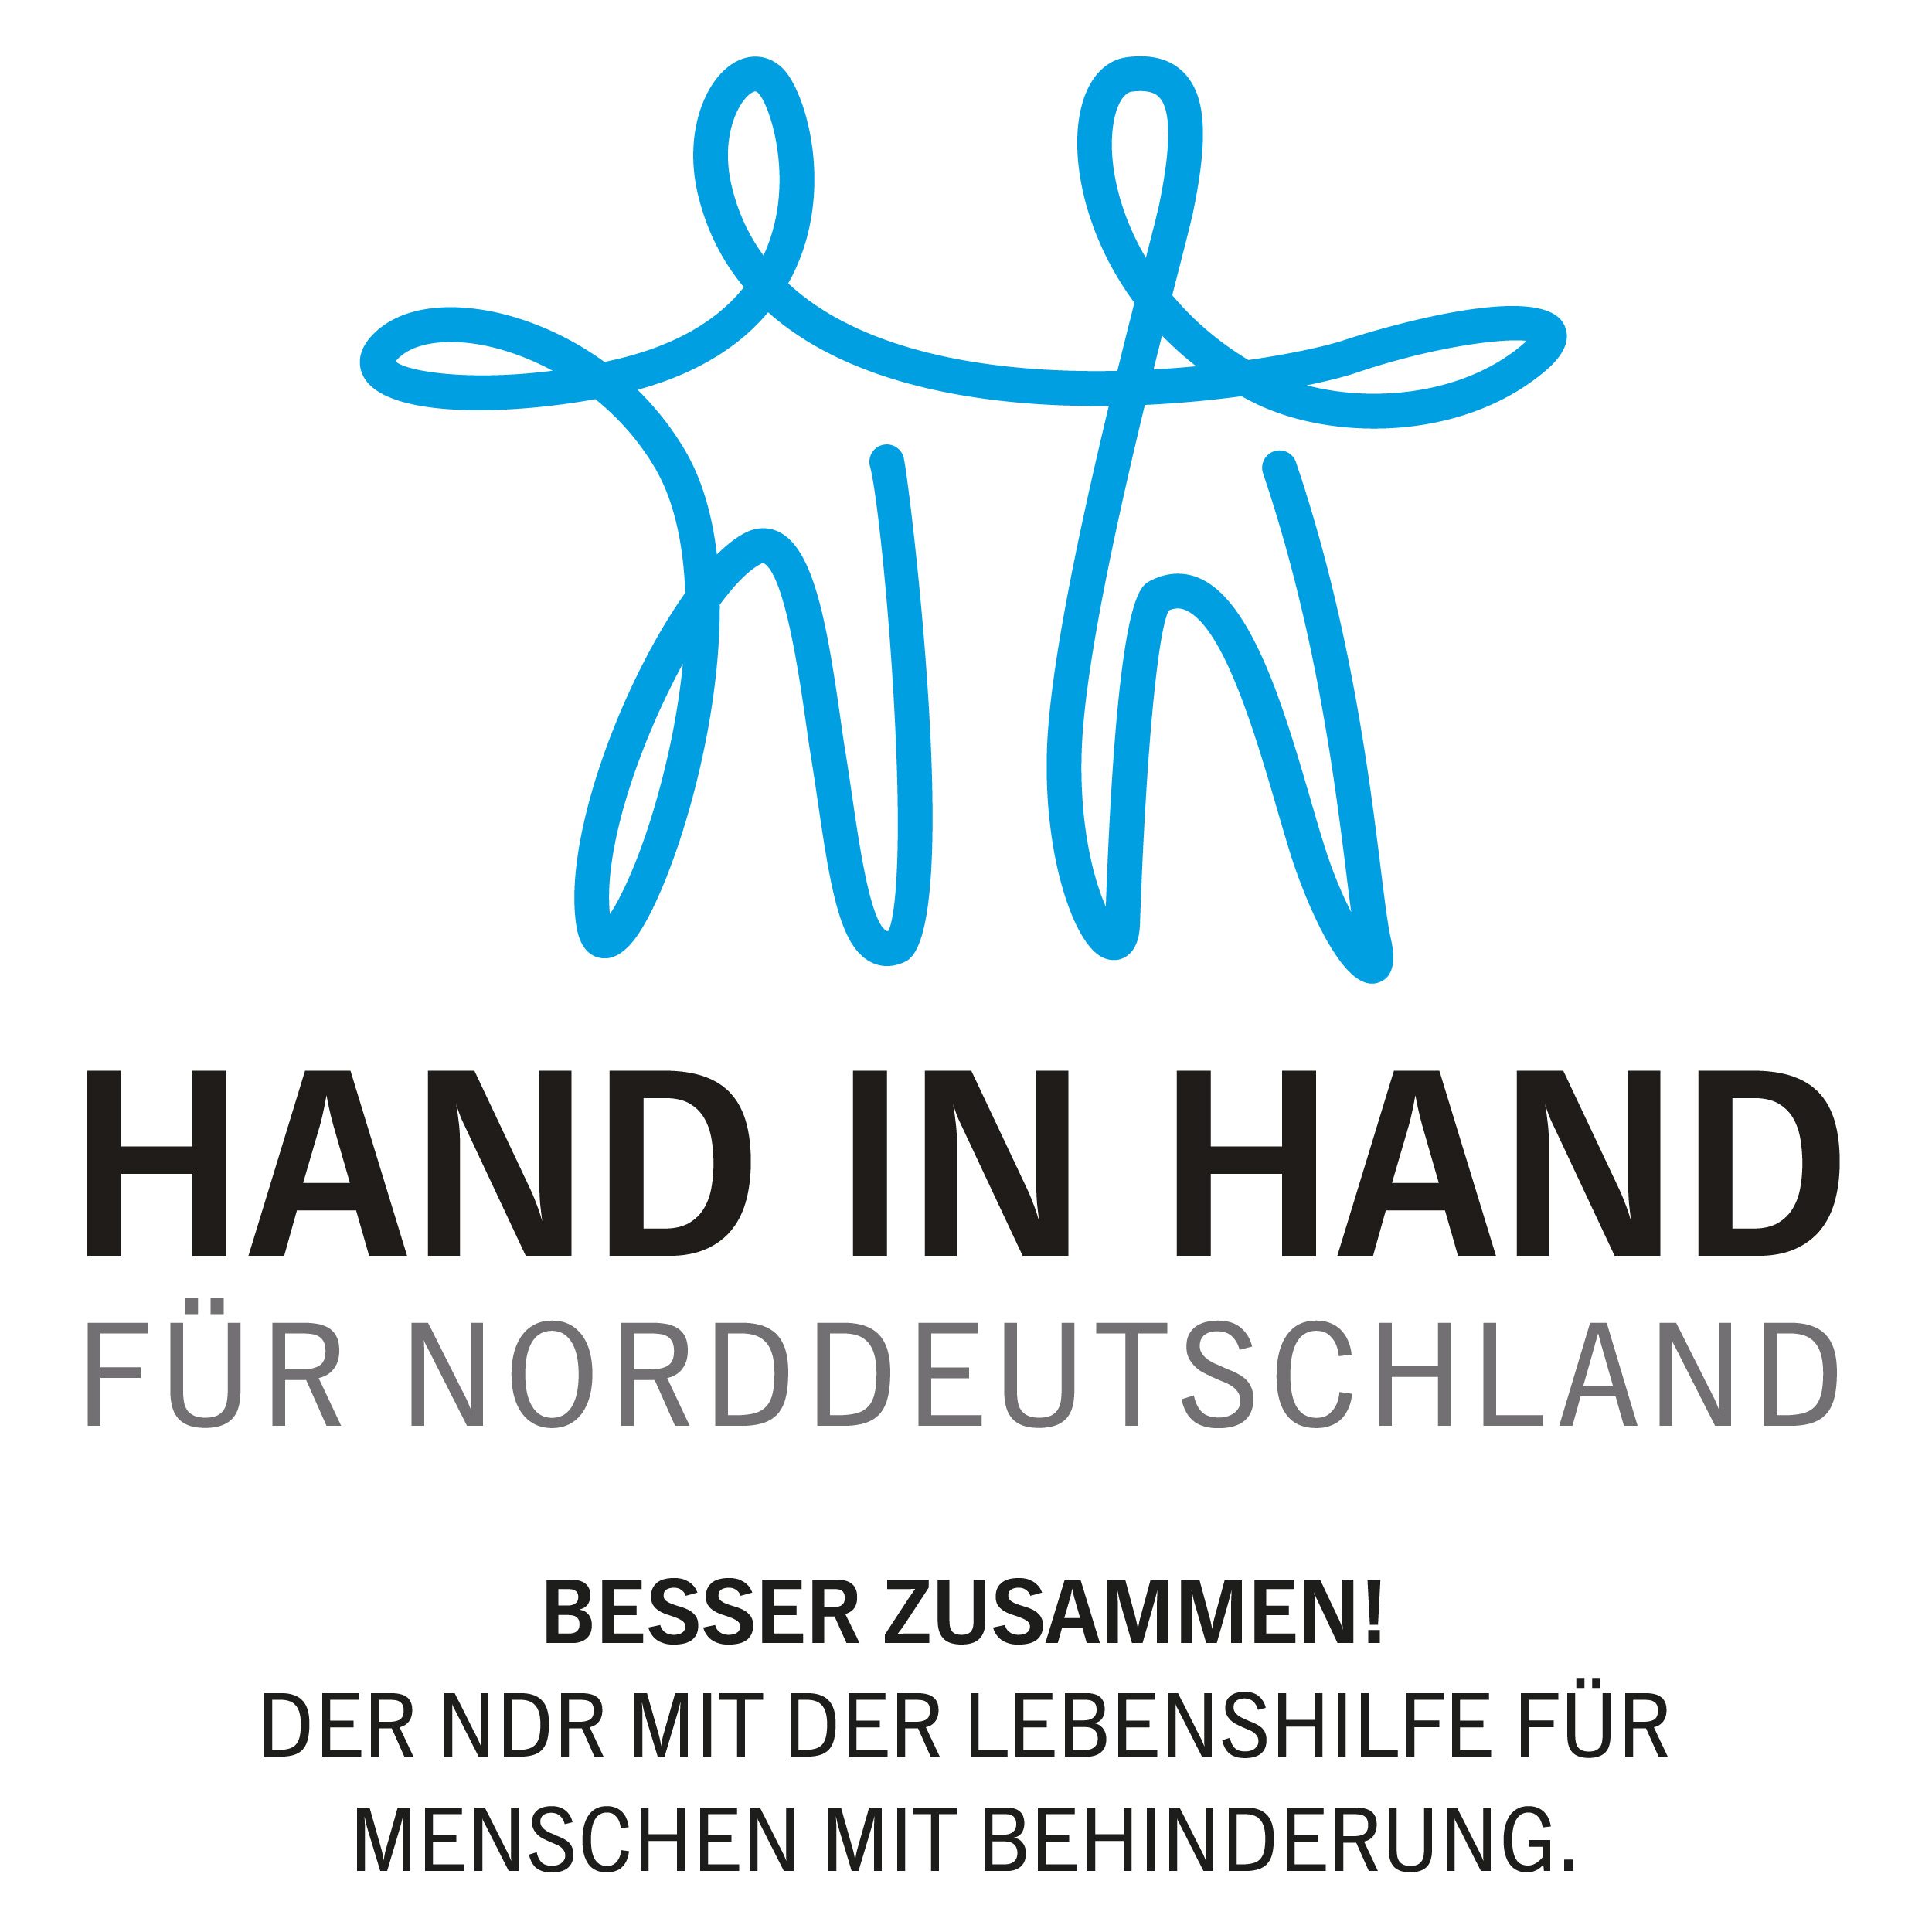 Wort-Bild-Marke »Hand ind Hand« für Norddeutschland 2023 des NDR in Zusammenarbeite mit der Lebenshilfe